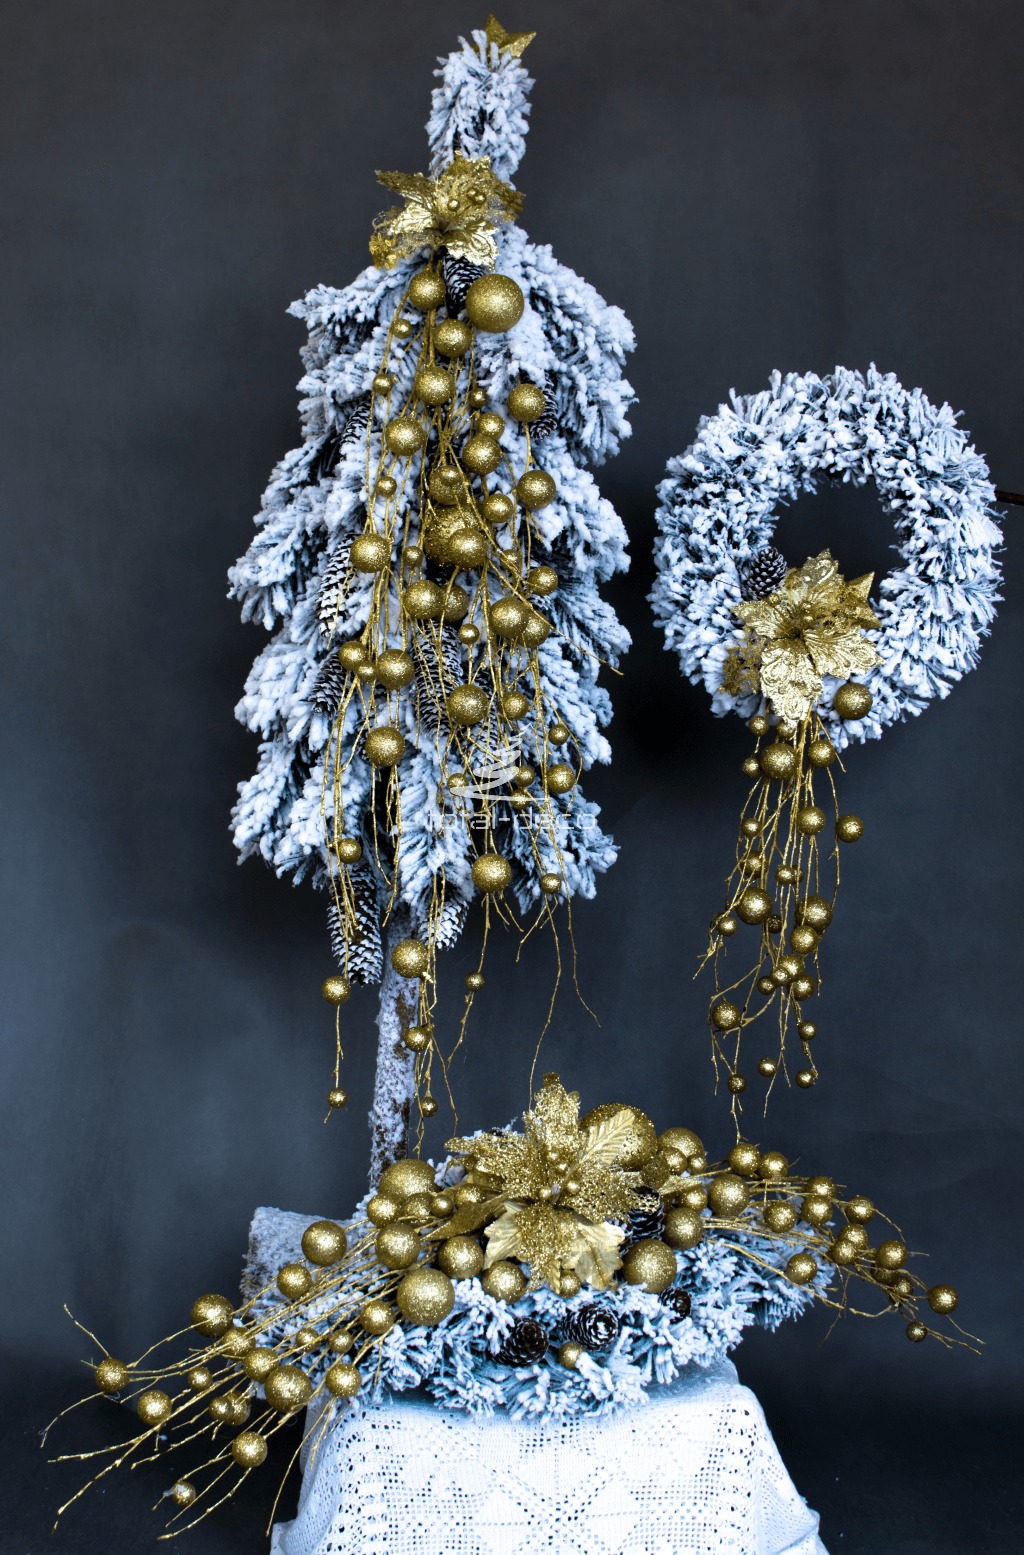 zestaw dekoracji bożonarodzeniowych nowoczesne ozdoby choinka stroik wiane ośnieżona oprószona śniegiem bielona choinka na pniu ze złotem wianek na drzwi